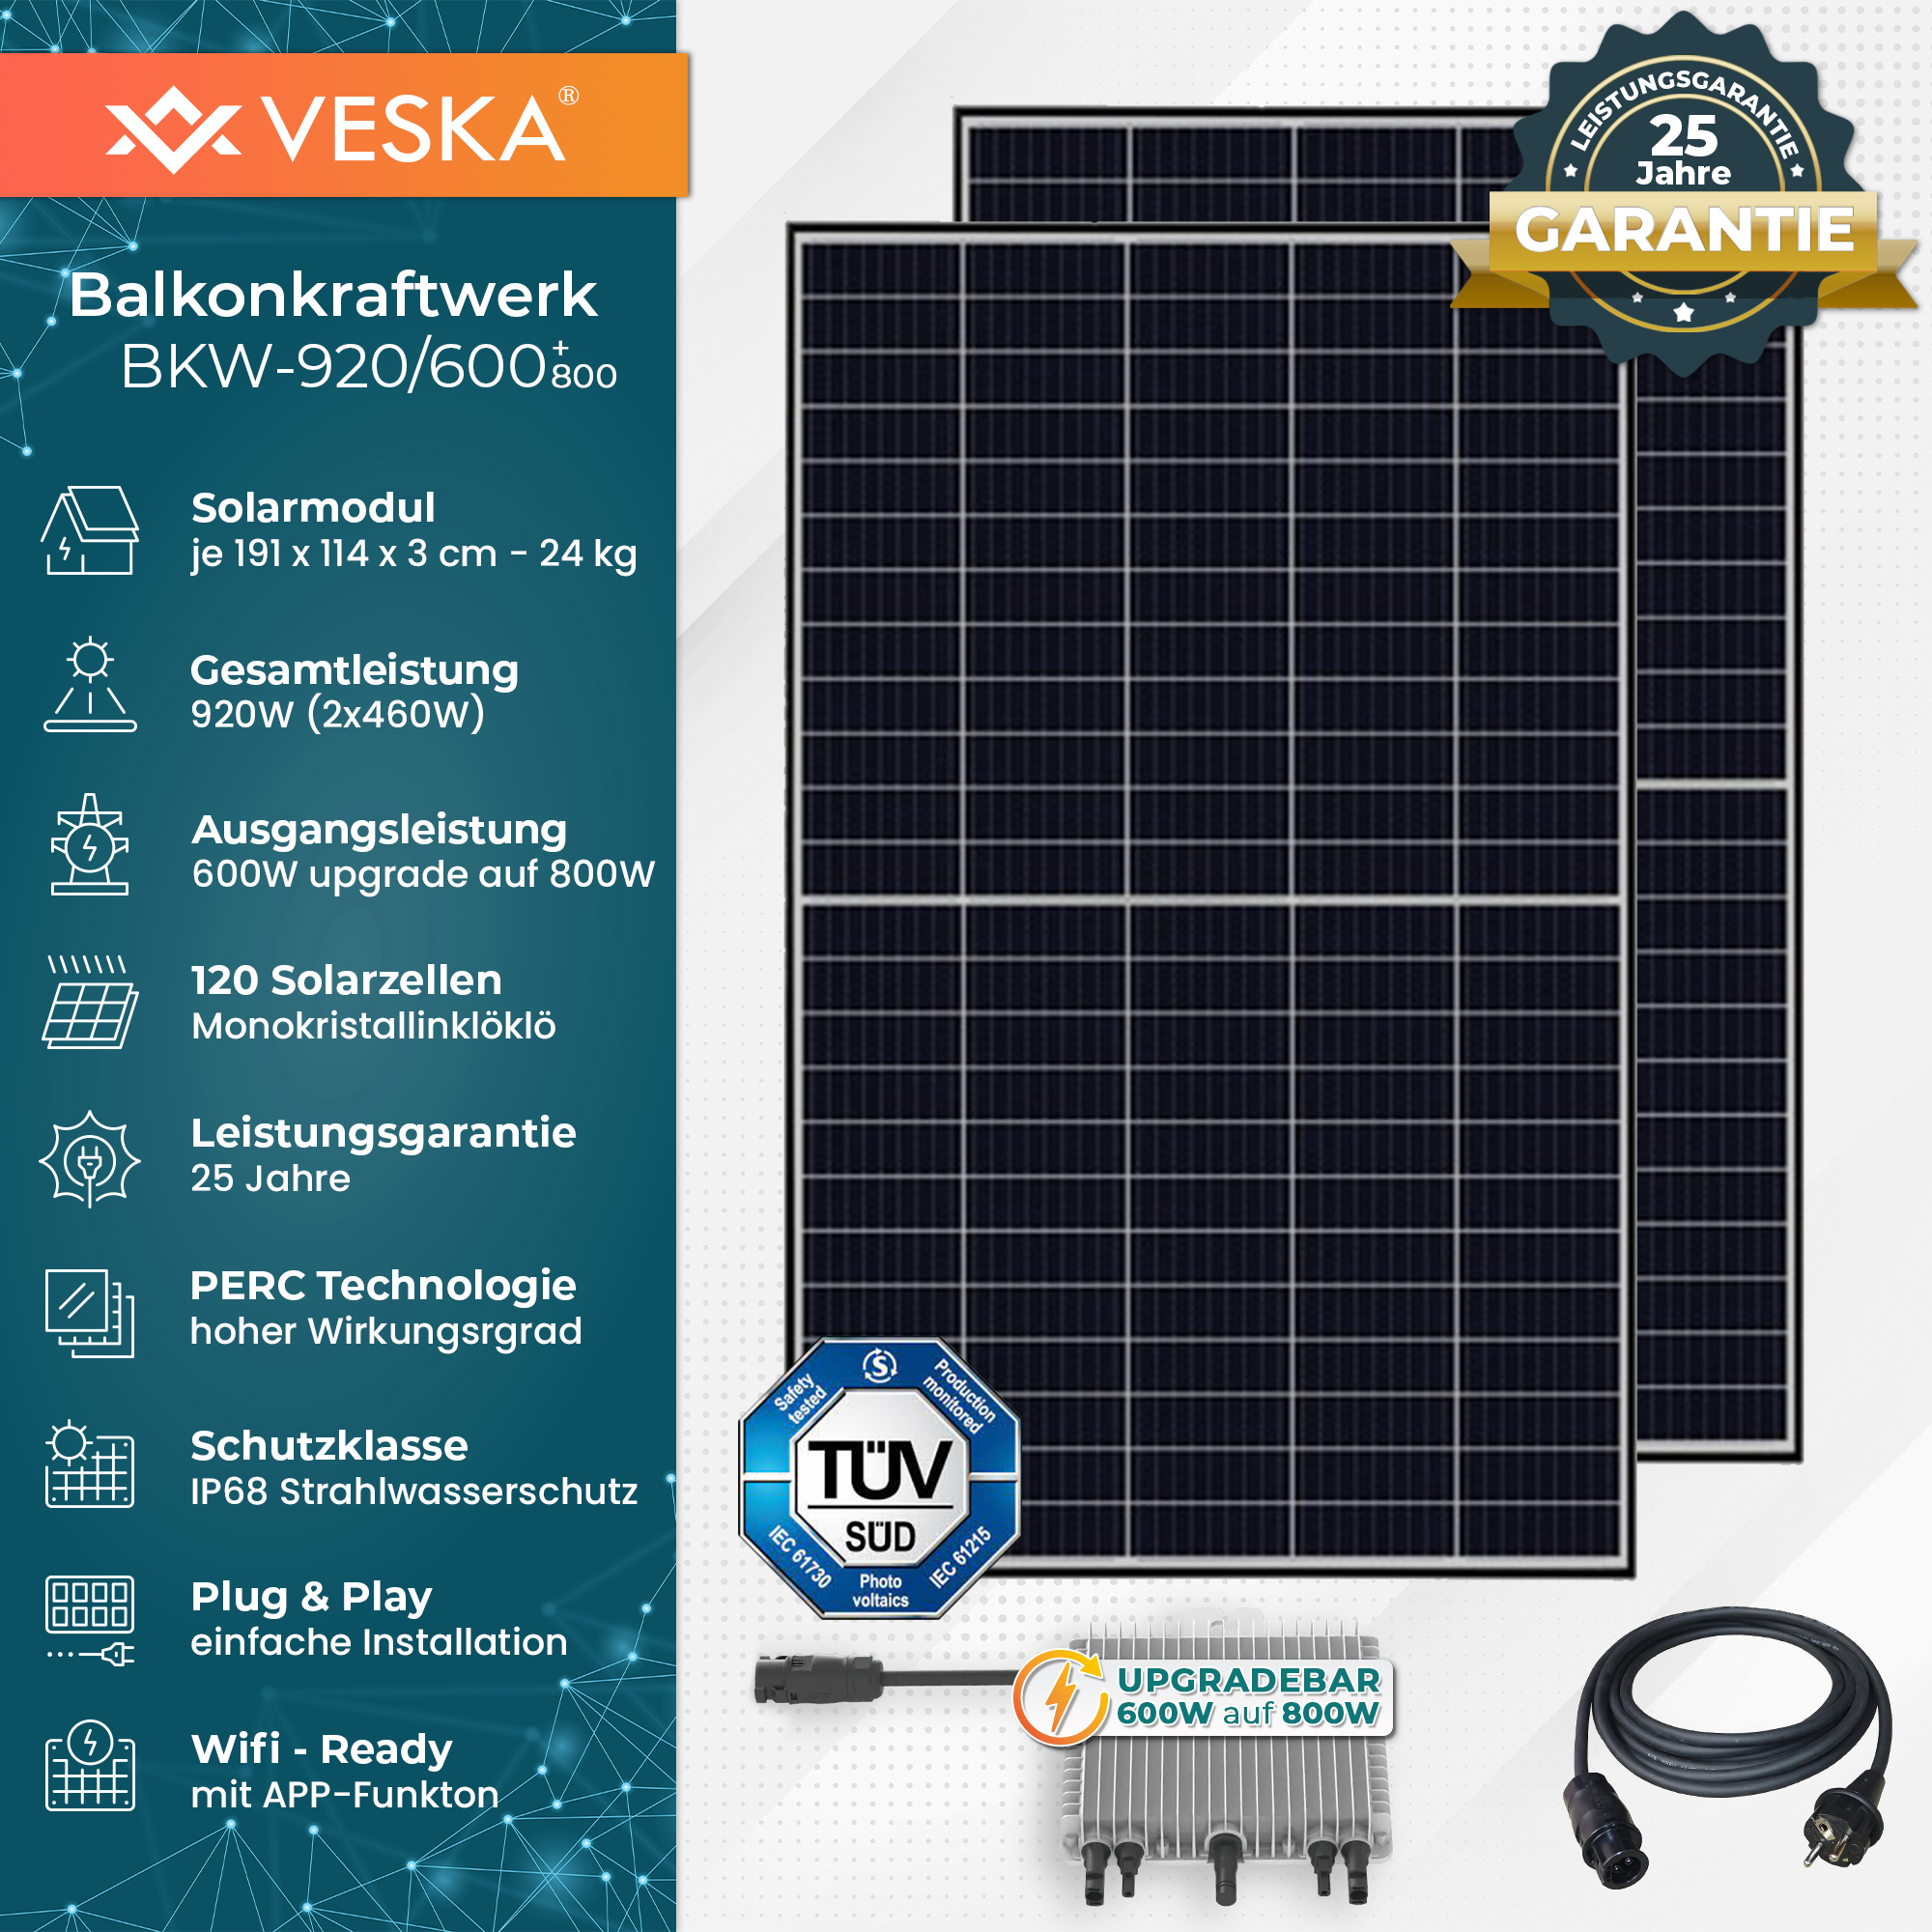 VESKA Komplettset PV 920W/600W auf Balkon-Solaranlage (upgradebar 800W)